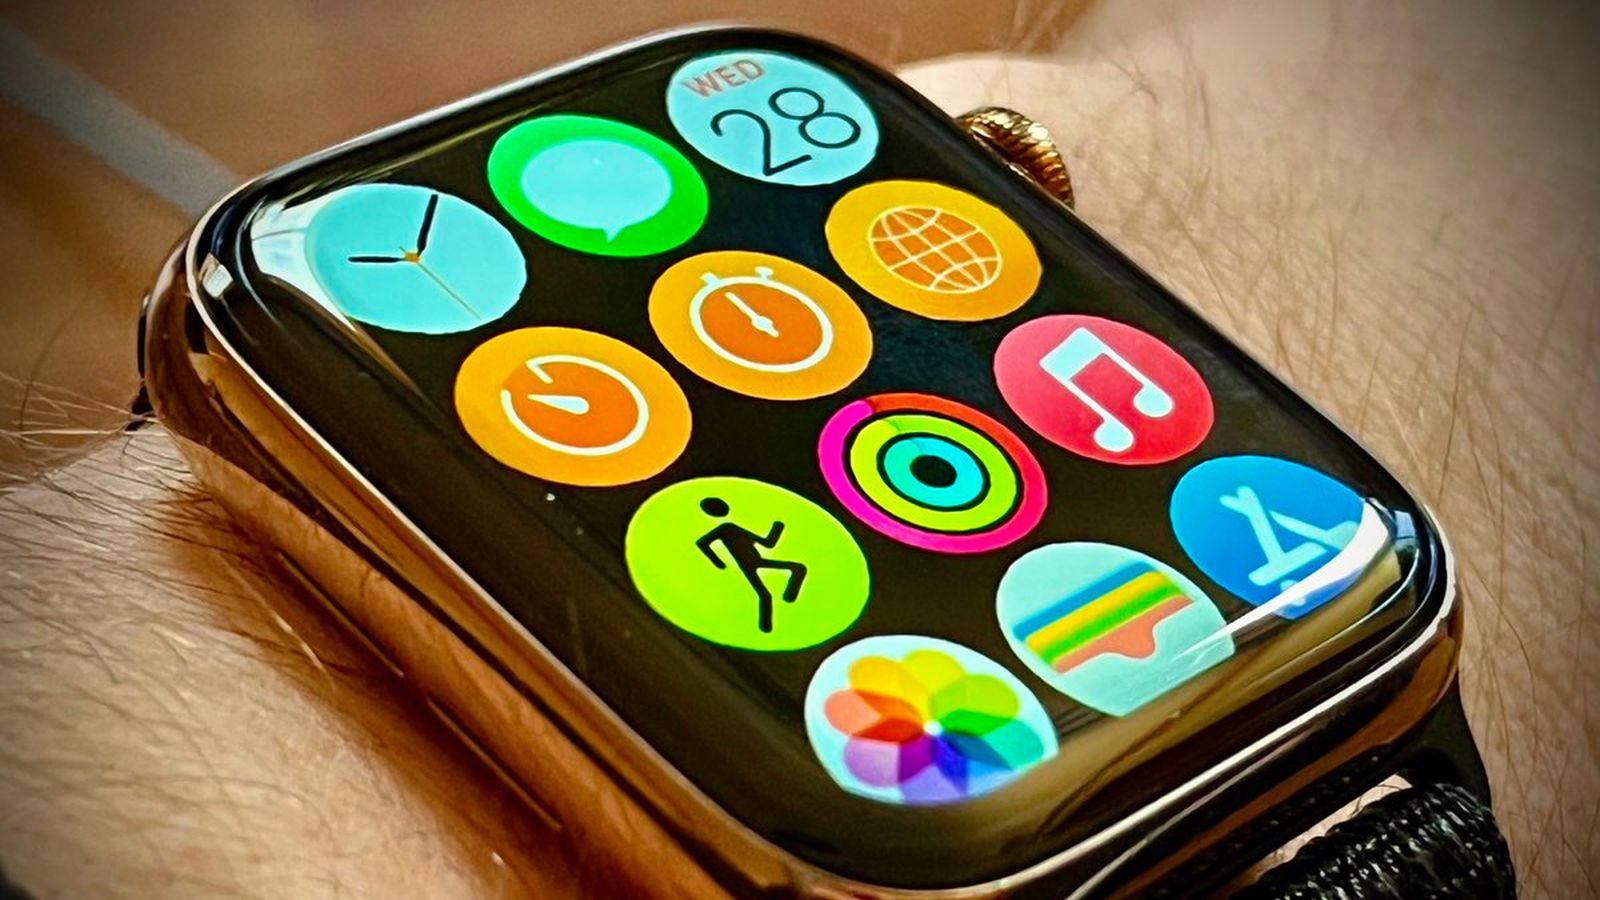 Как может измениться дизайн домашнего экрана iOS под влиянием Apple Watch